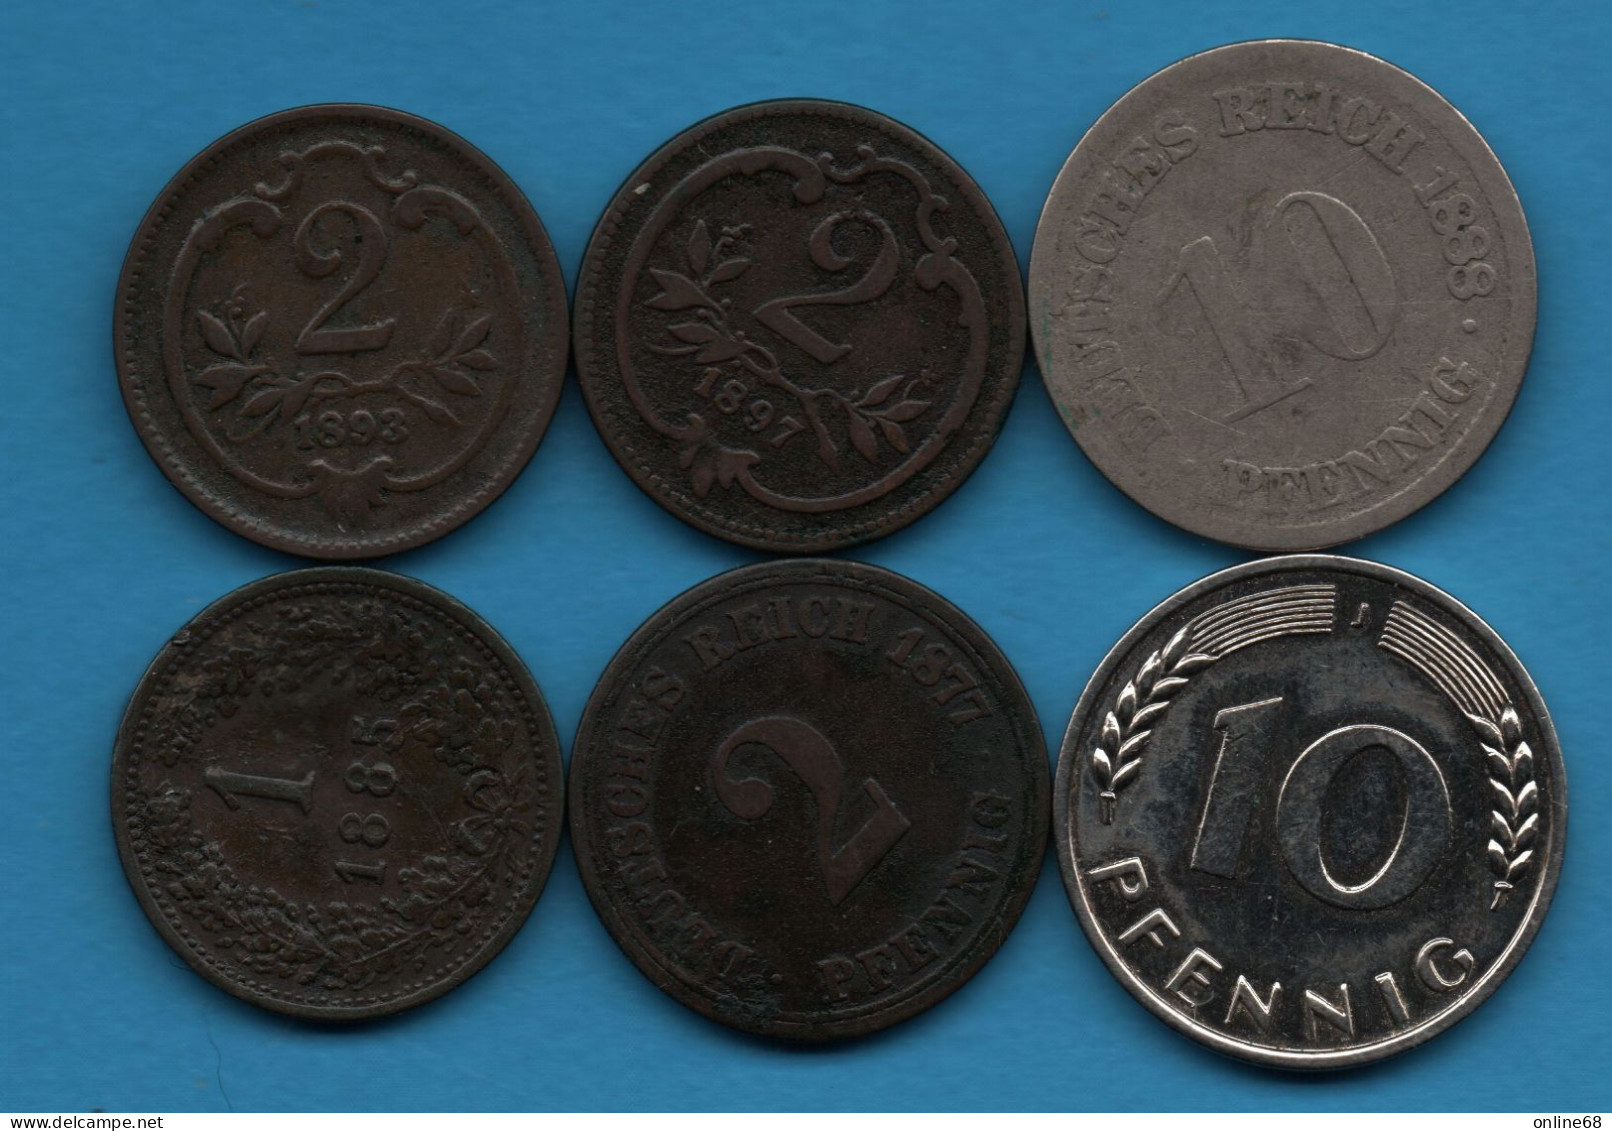 LOT MONNAIES 6 COINS : AUSTRIA - GERMANY - Österreich - Deutsches Reich  1877 - 1950 - Kiloware - Münzen